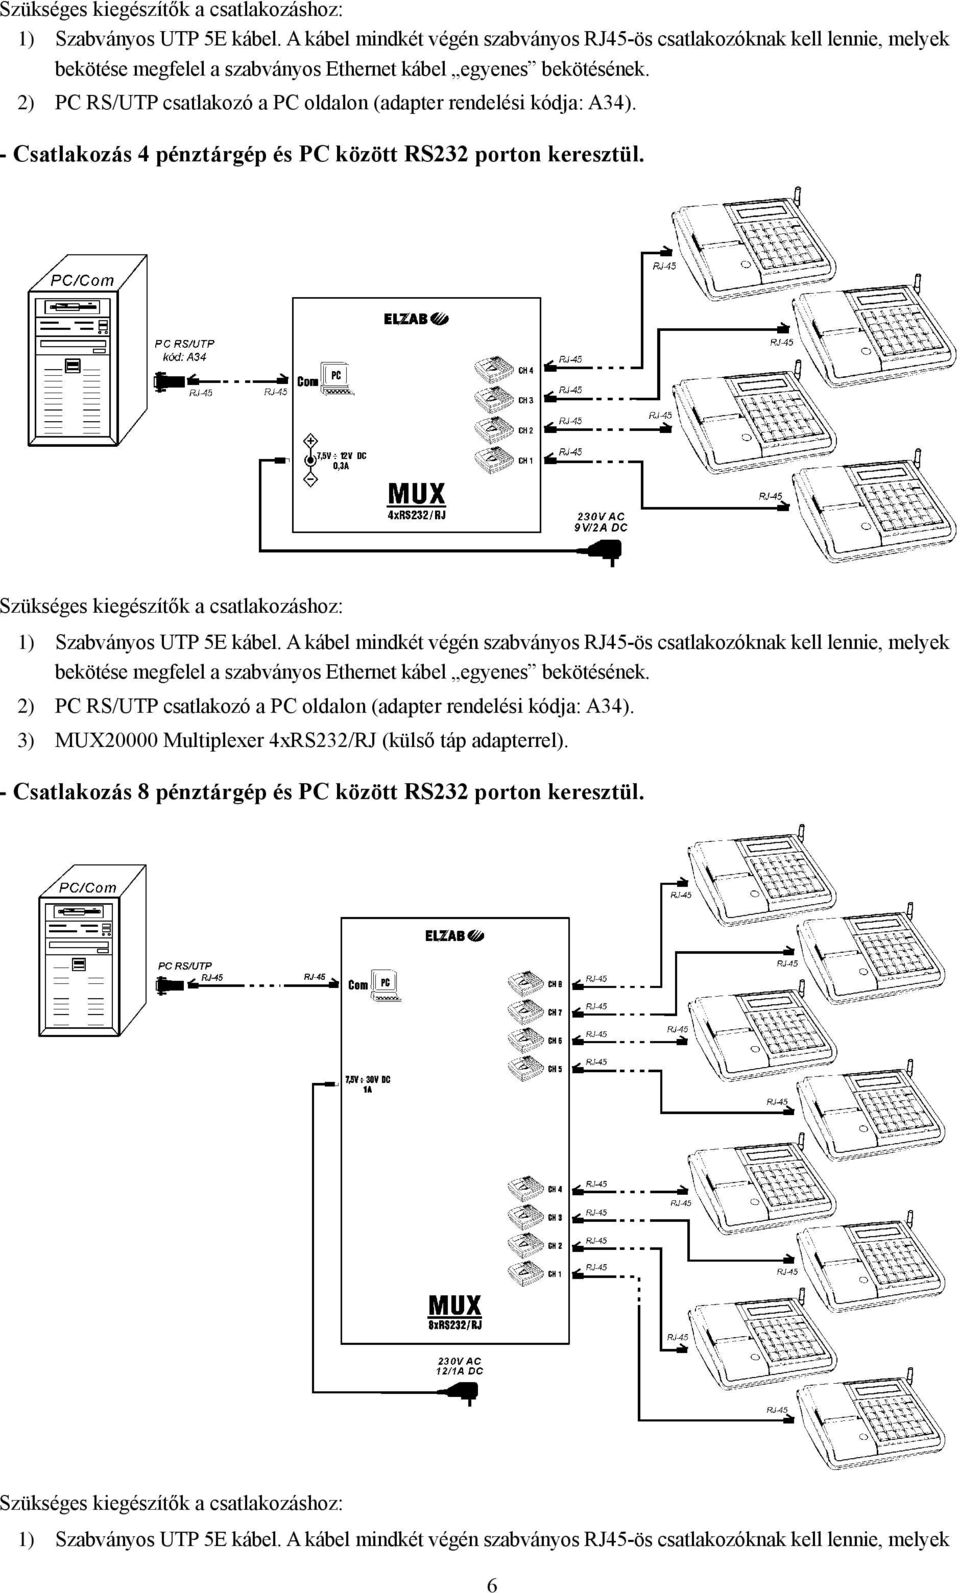 2) PC RS/UTP csatlakozó a PC oldalon (adapter rendelési kódja: A34). 3) MUX20000 Multiplexer 4xRS232/RJ (külső táp adapterrel). - Csatlakozás 8 pénztárgép és PC között RS232 porton keresztül.